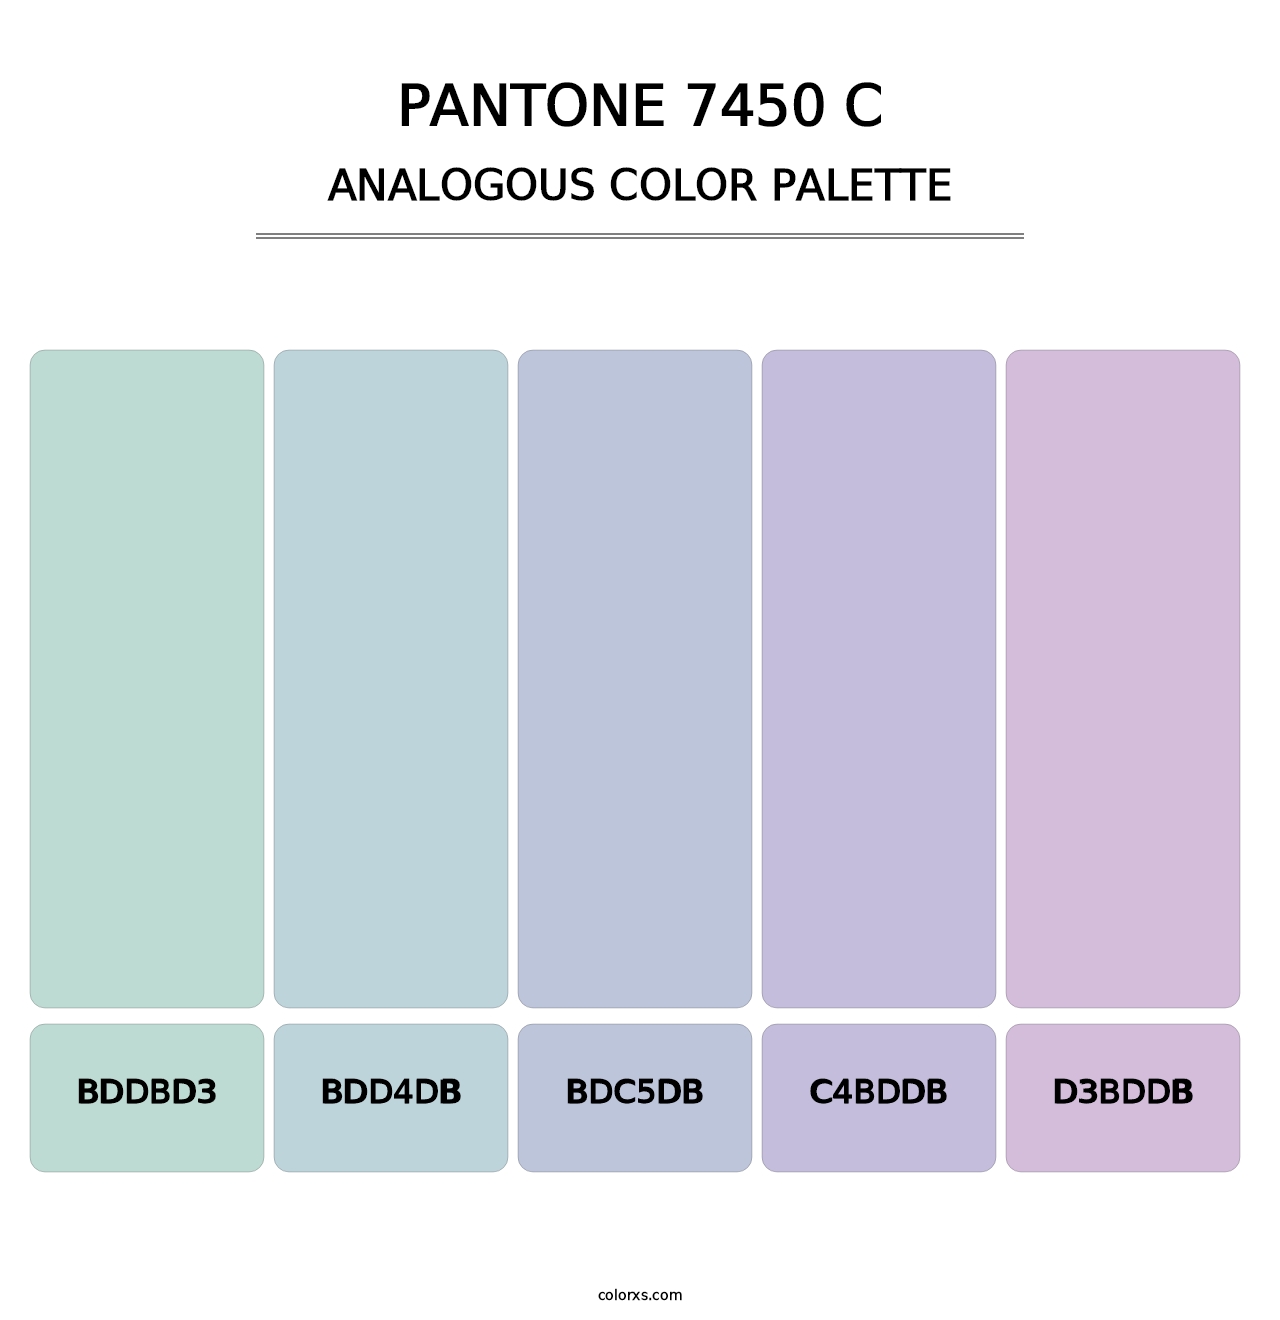 PANTONE 7450 C - Analogous Color Palette